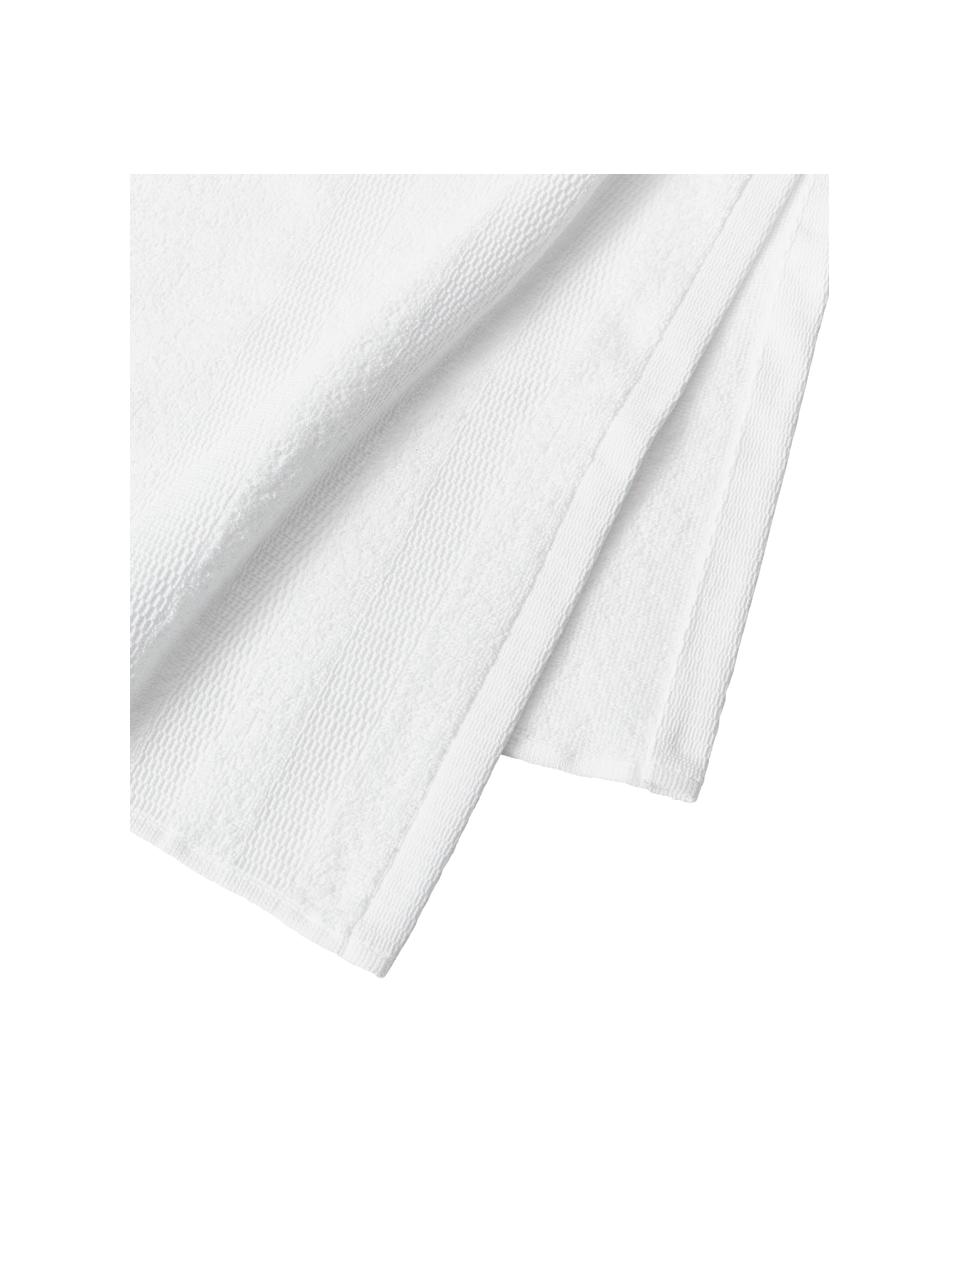 Lot de serviettes de bain en coton Camila, 4 élém., 100 % coton
Grammage léger, 400 g/m²

Le matériau est certifié STANDARD 100 OEKO-TEX®, 3883CIT, CITEVE, Blanc, Lot de différentes tailles